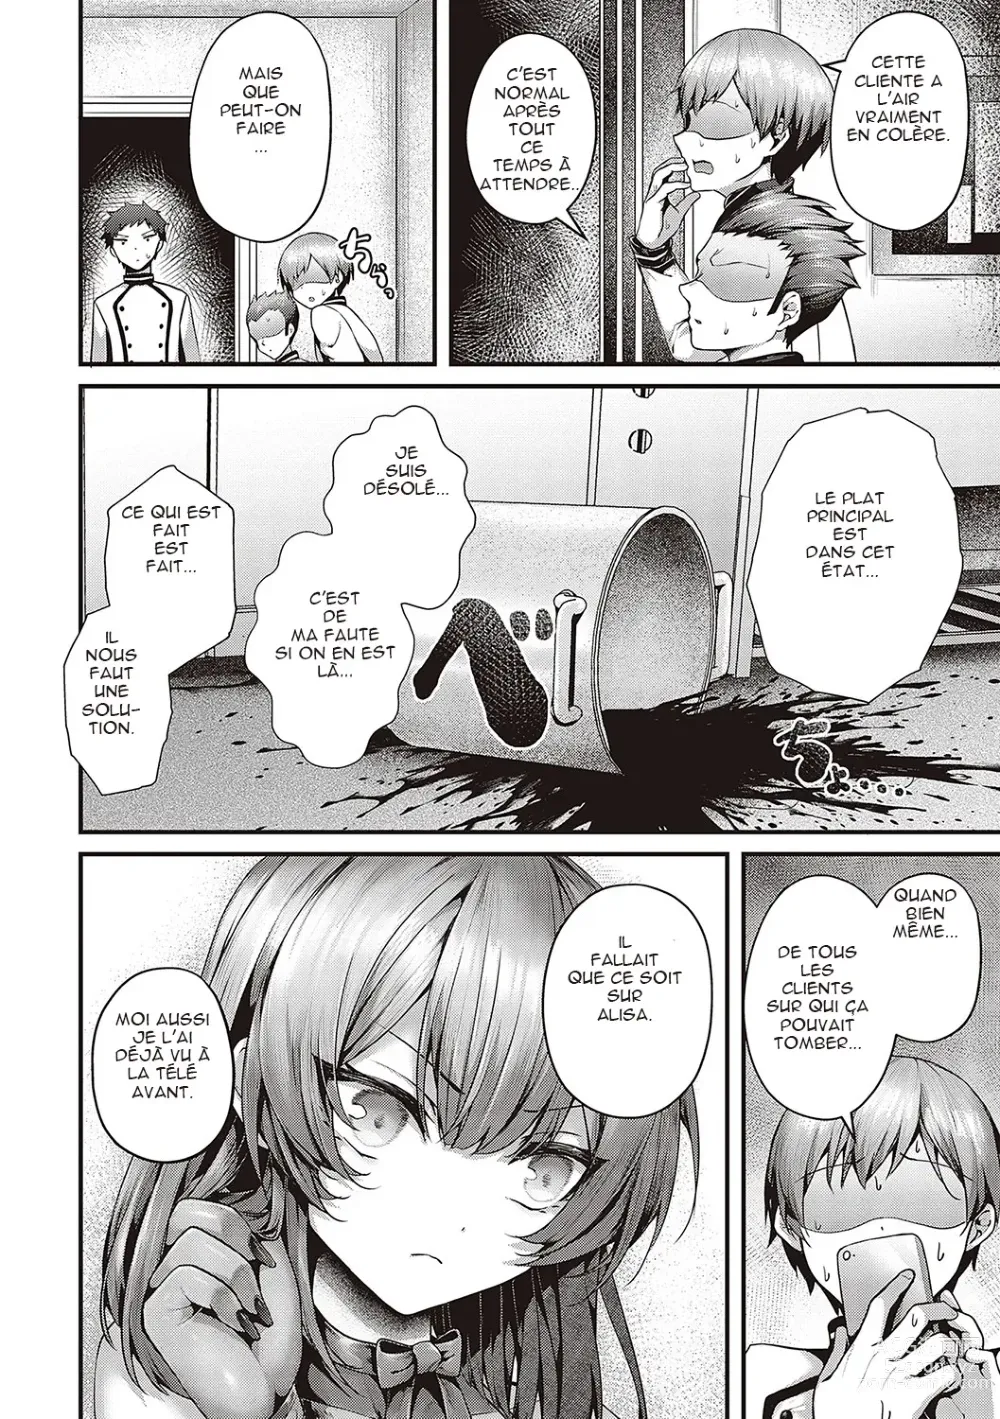 Page 2 of manga Supreme Chin Taste